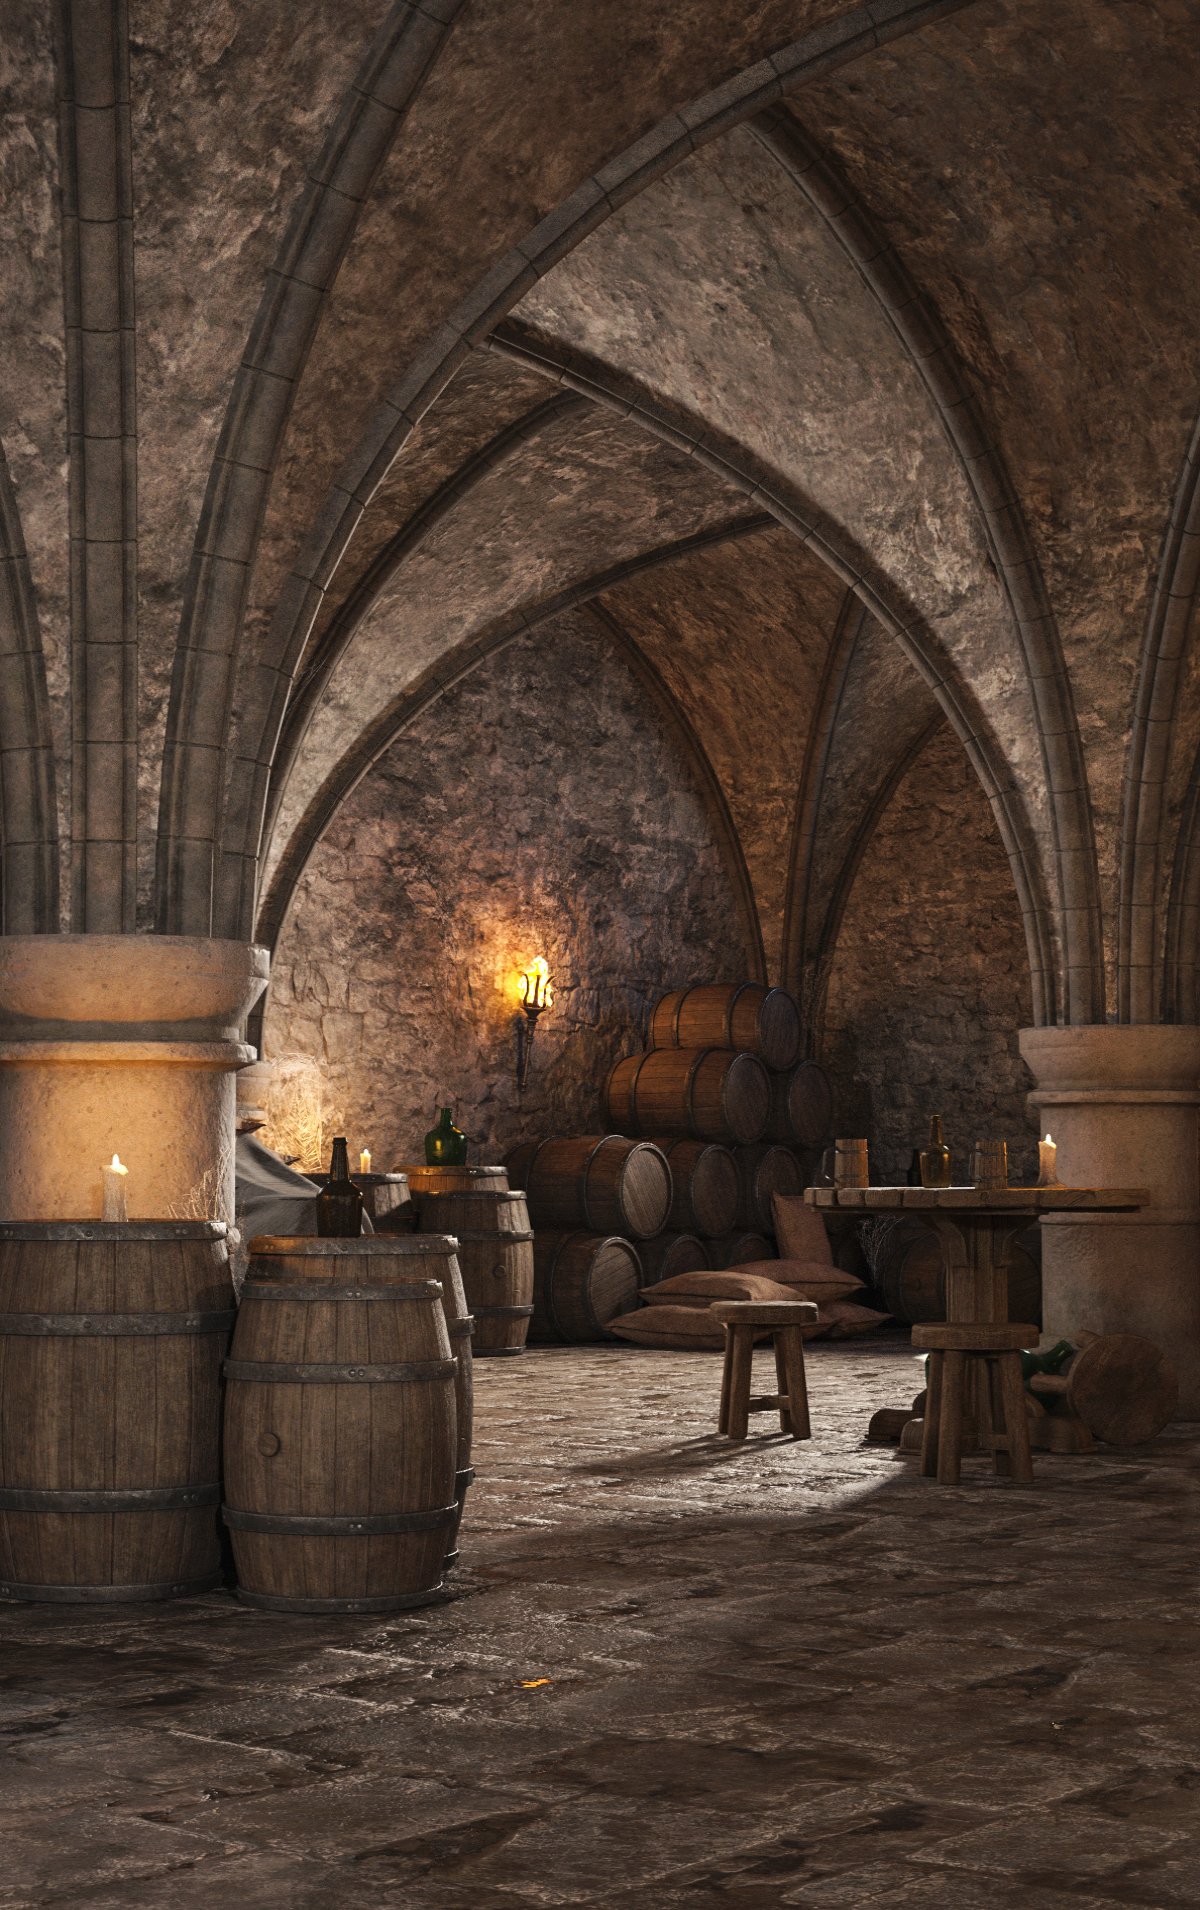 Medieval Cellar - Modular by: 3dLab, 3D Models by Daz 3D